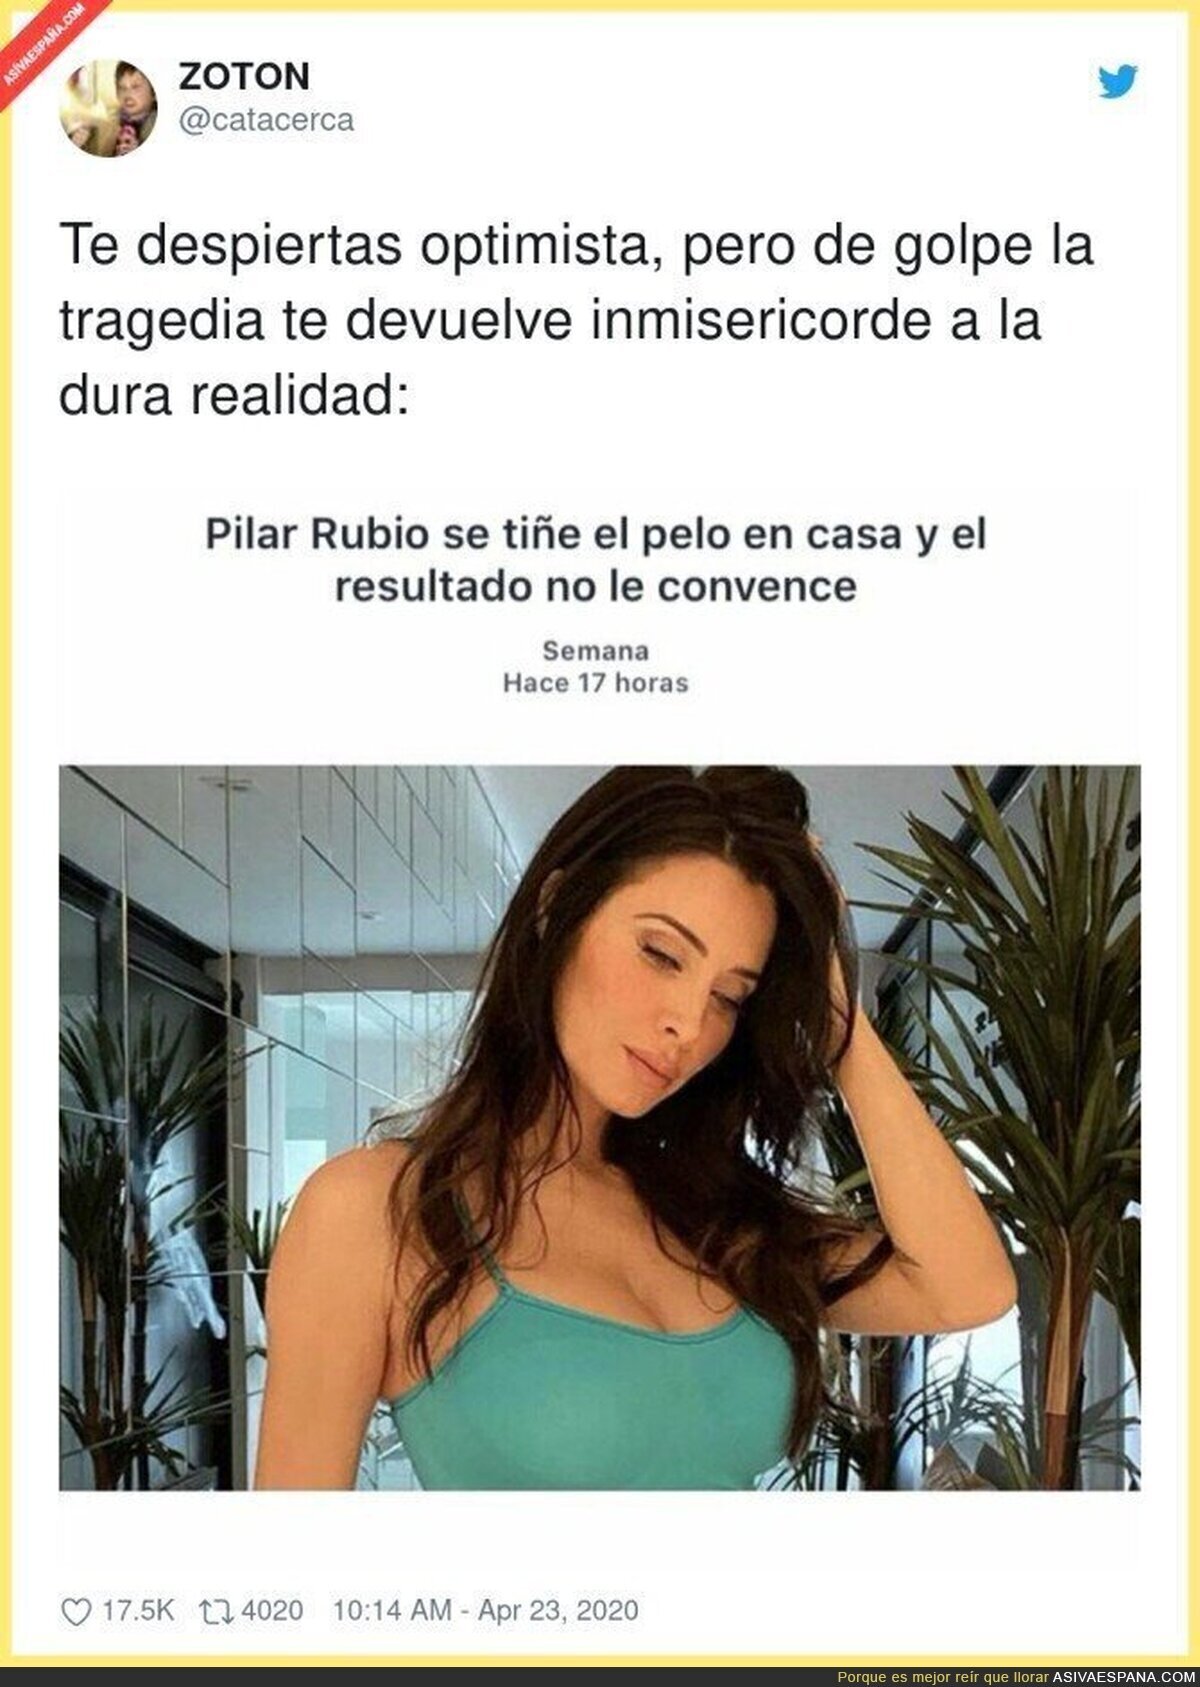 La dura vida de Pilar Rubio